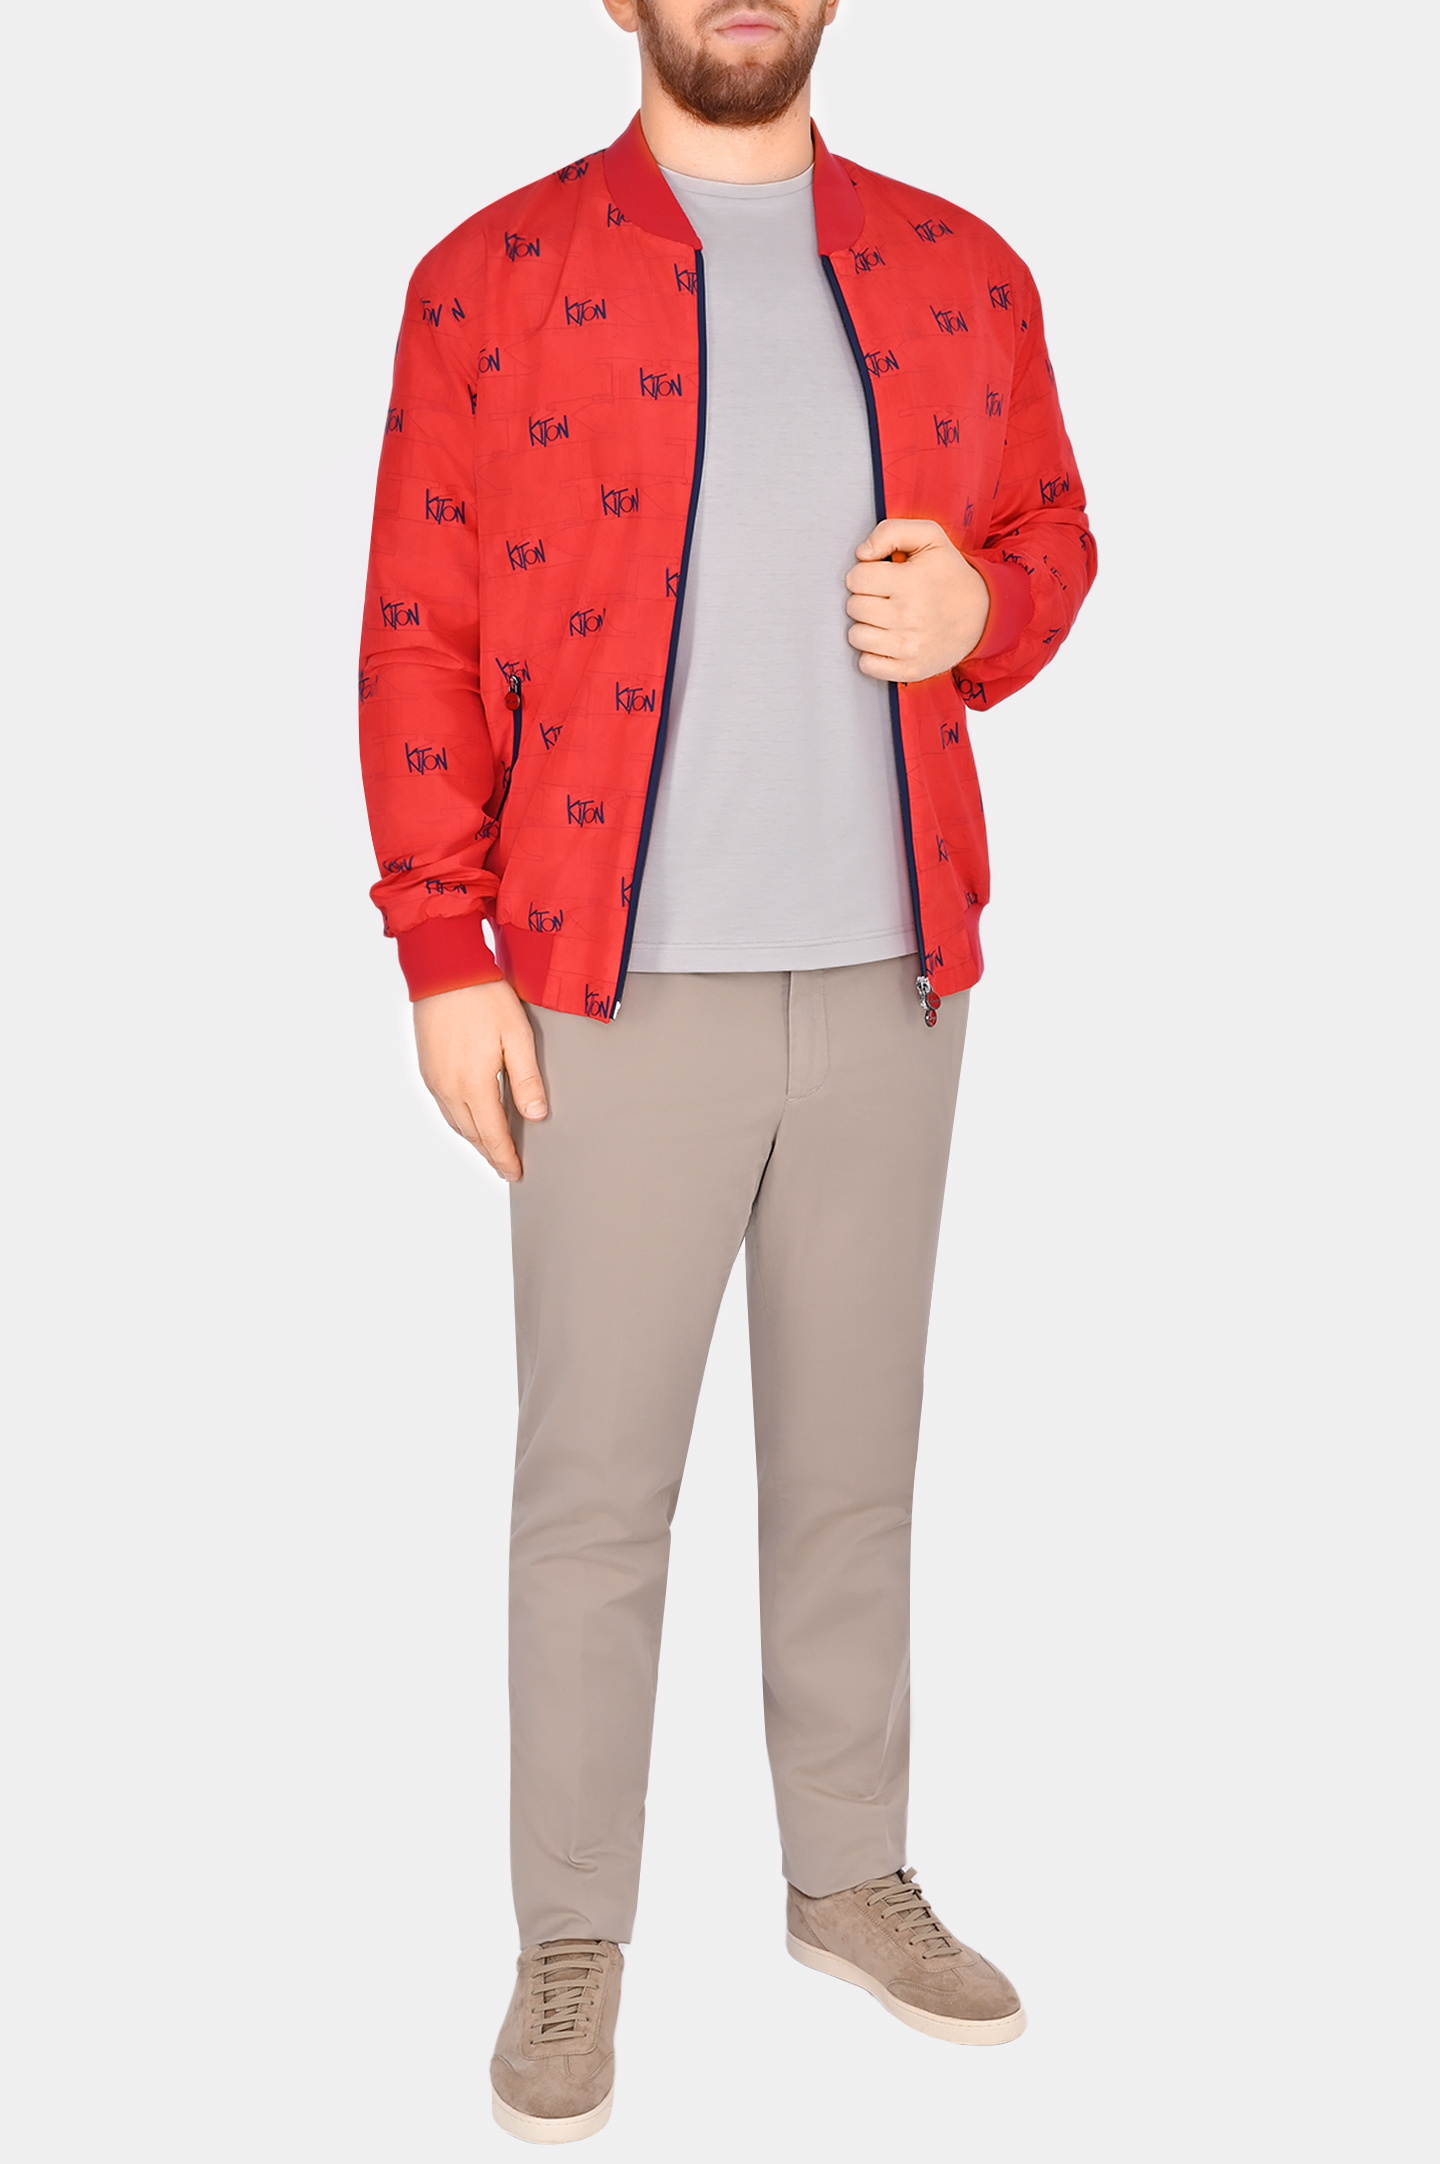 Легкая куртка из полиэстера с принтом и логотипом KITON UBLMSEAK0708D1, цвет: Красный, Мужской